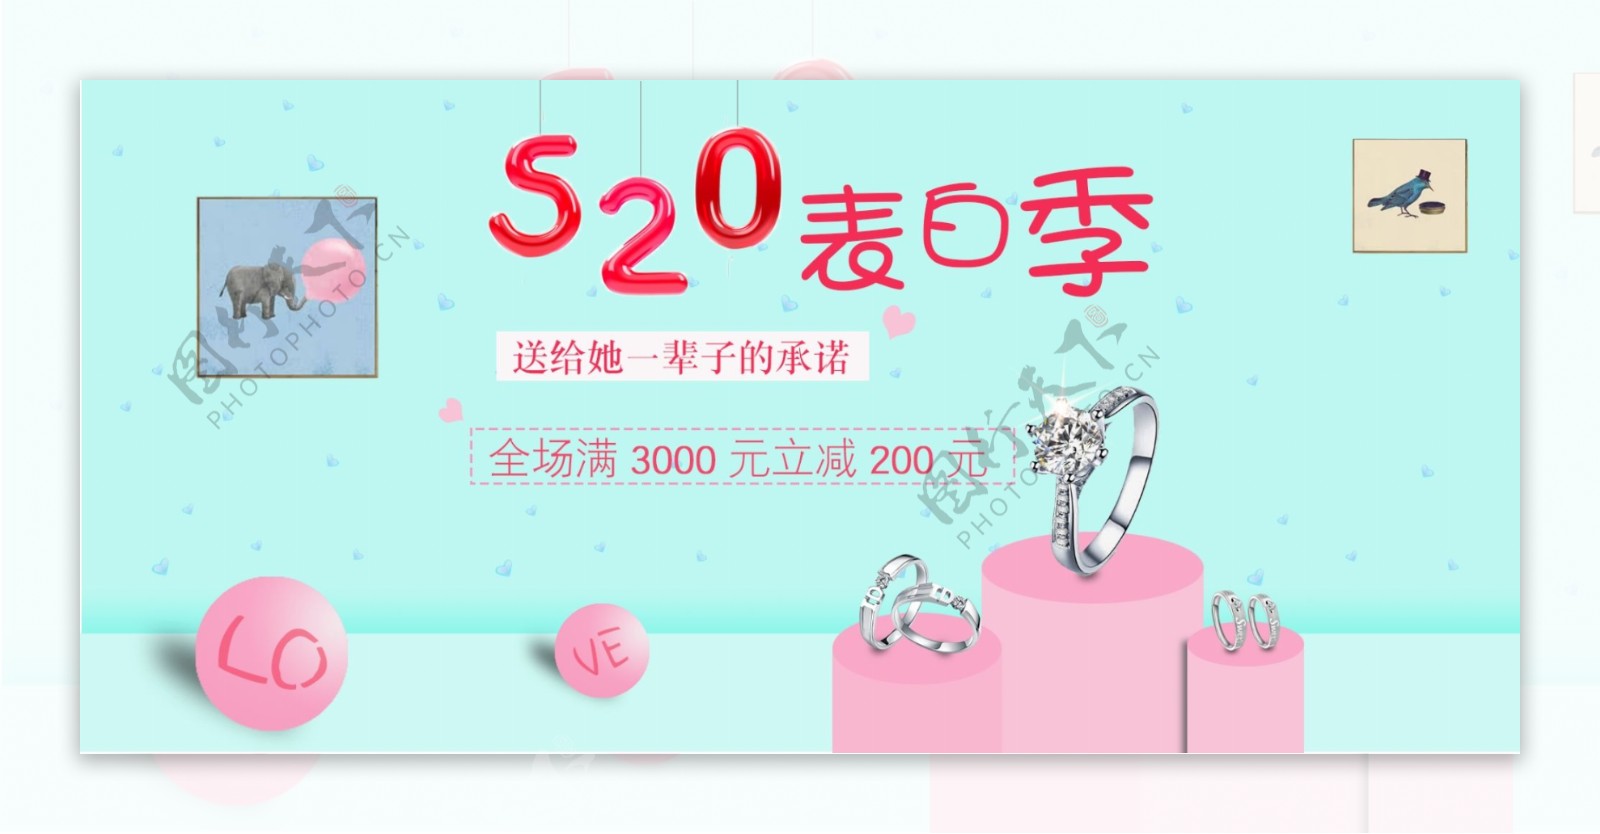 天猫520表白季简约海报banner